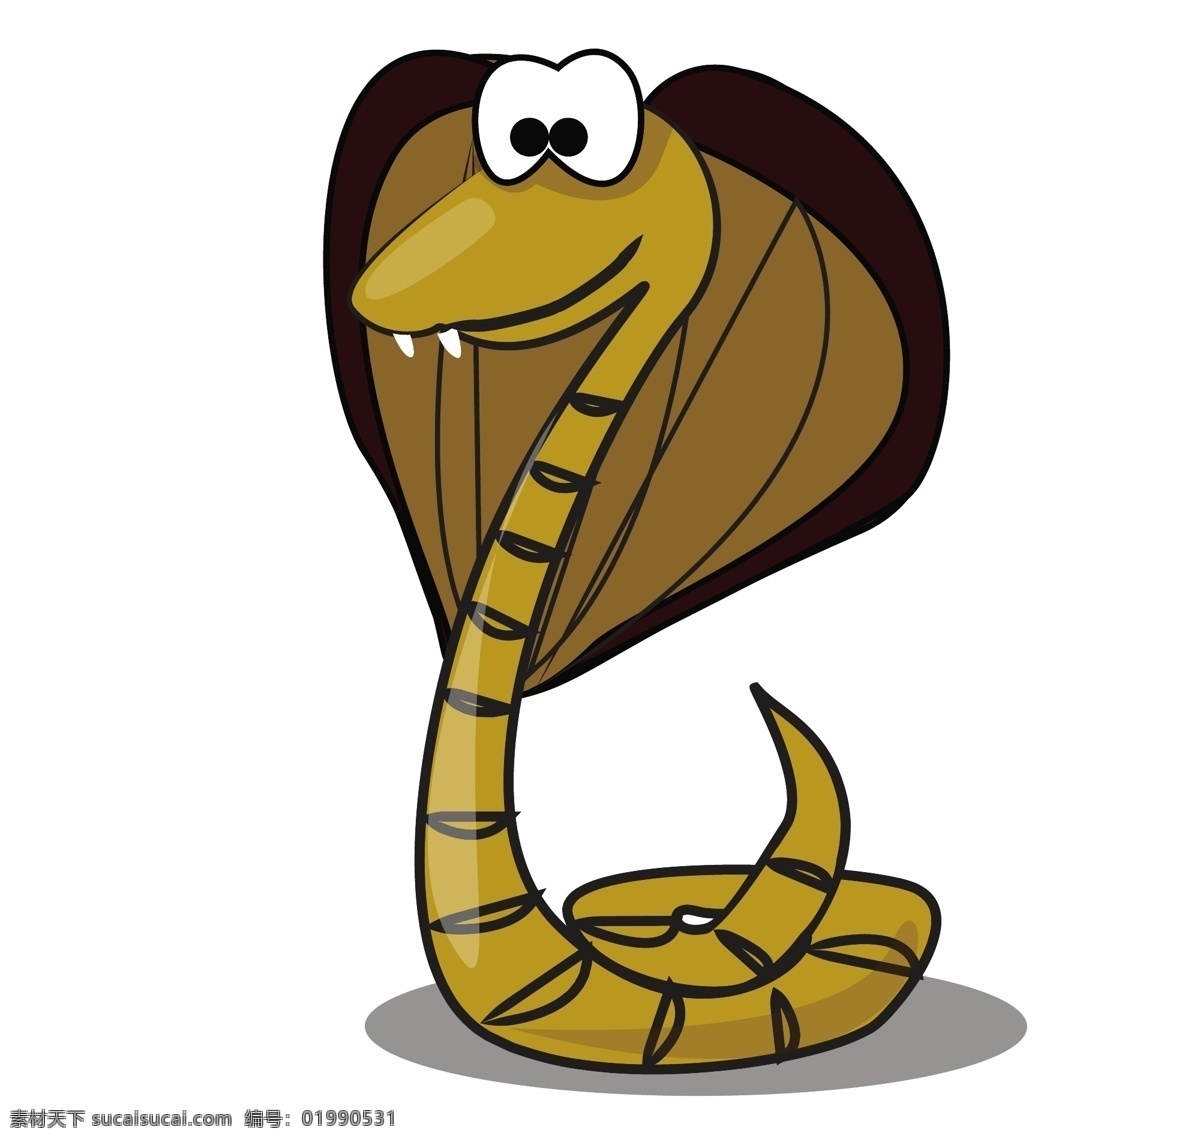 矢量 卡通 眼镜蛇 可爱 的卡 通 动物 素材图片 矢量素材 矢量动物 卡通动物